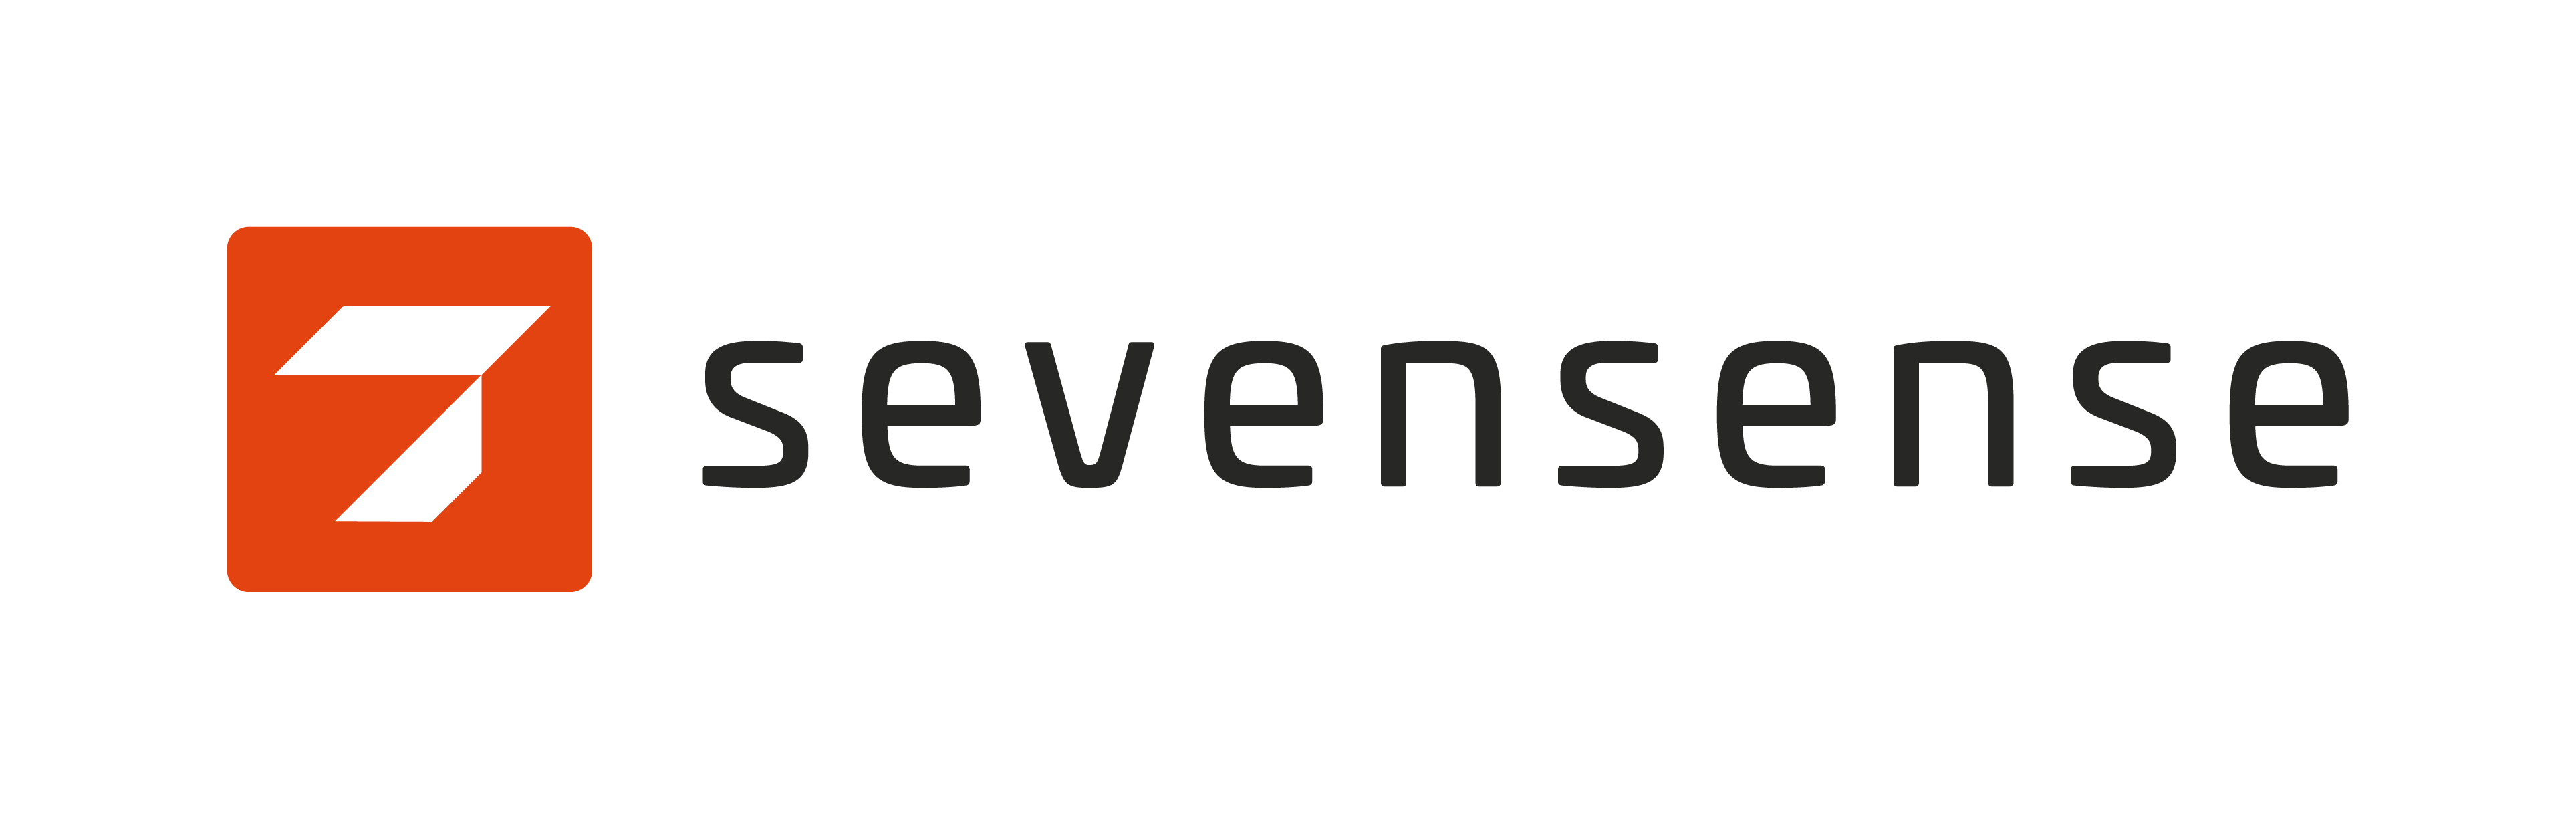 Sevensense_7s-basic-logo-color-CMYK.png